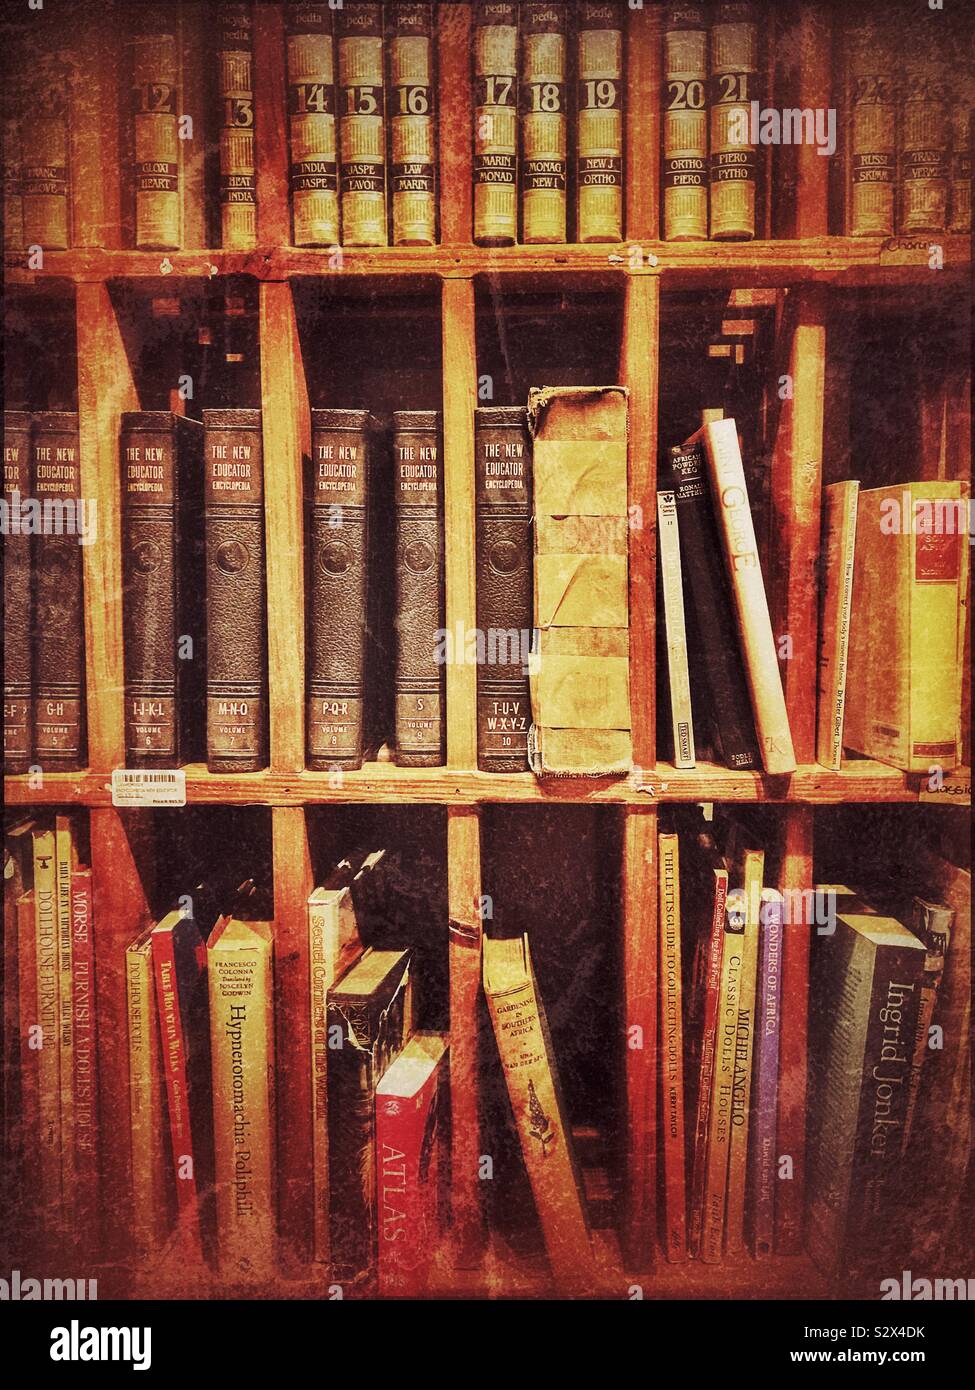 Old books in bookshelves. Stock Photo